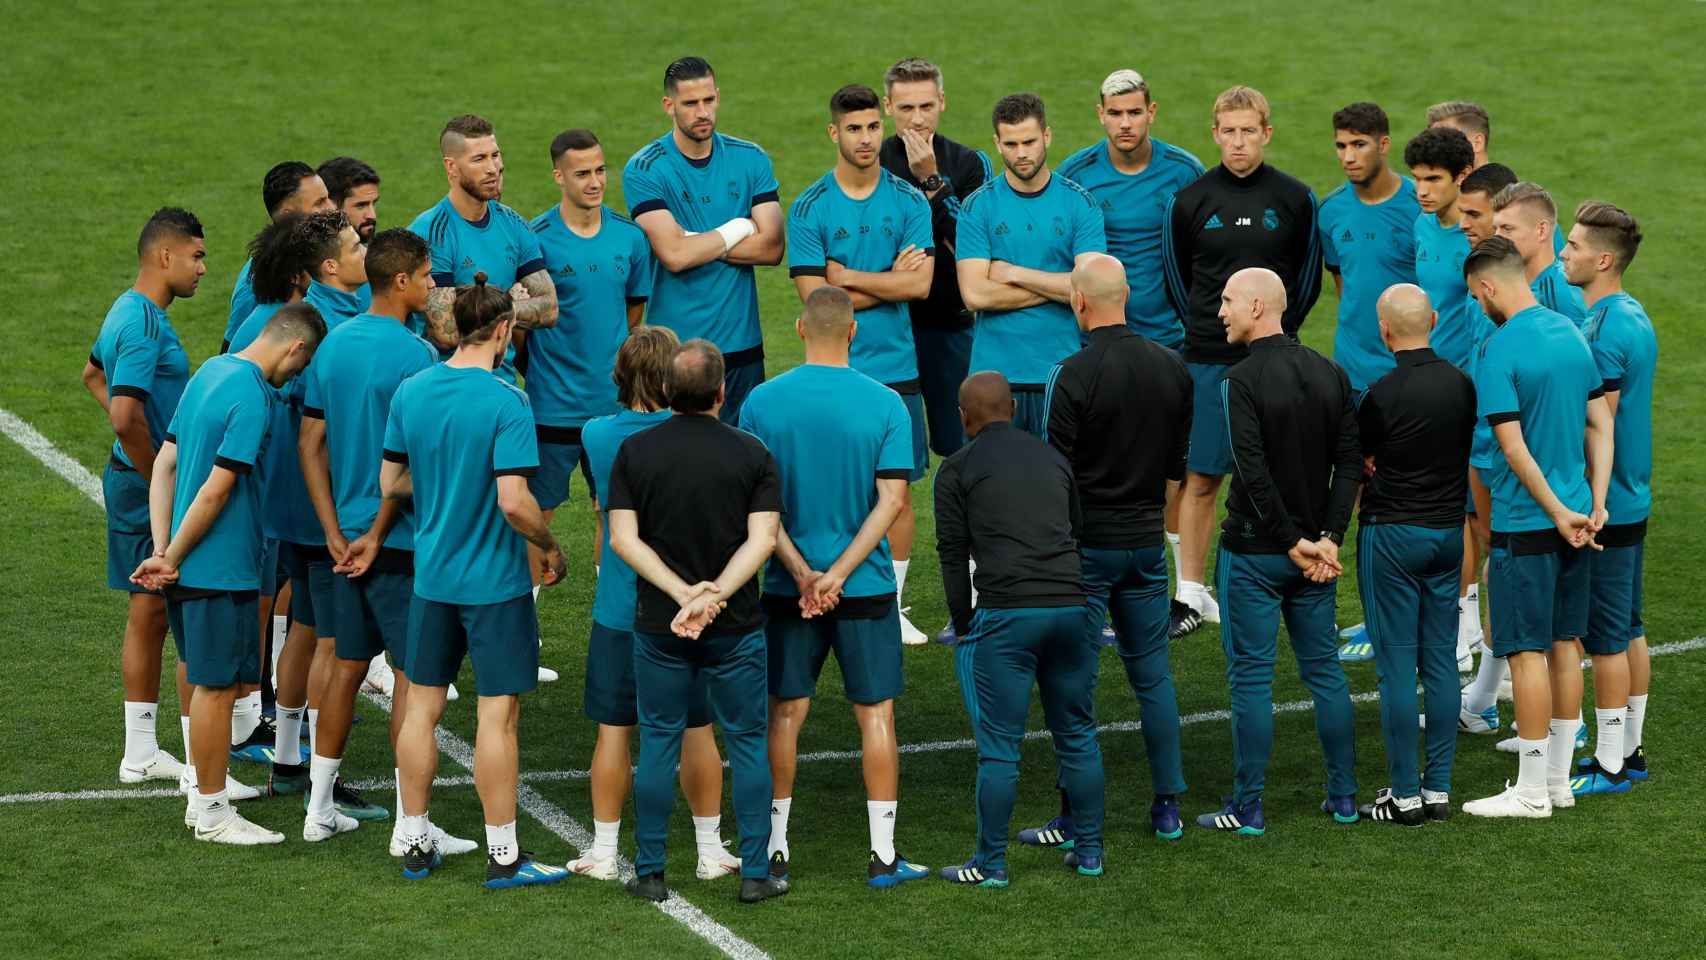 La plantilla, concentrada y escuchando a Zidane durante el entrenamiento.